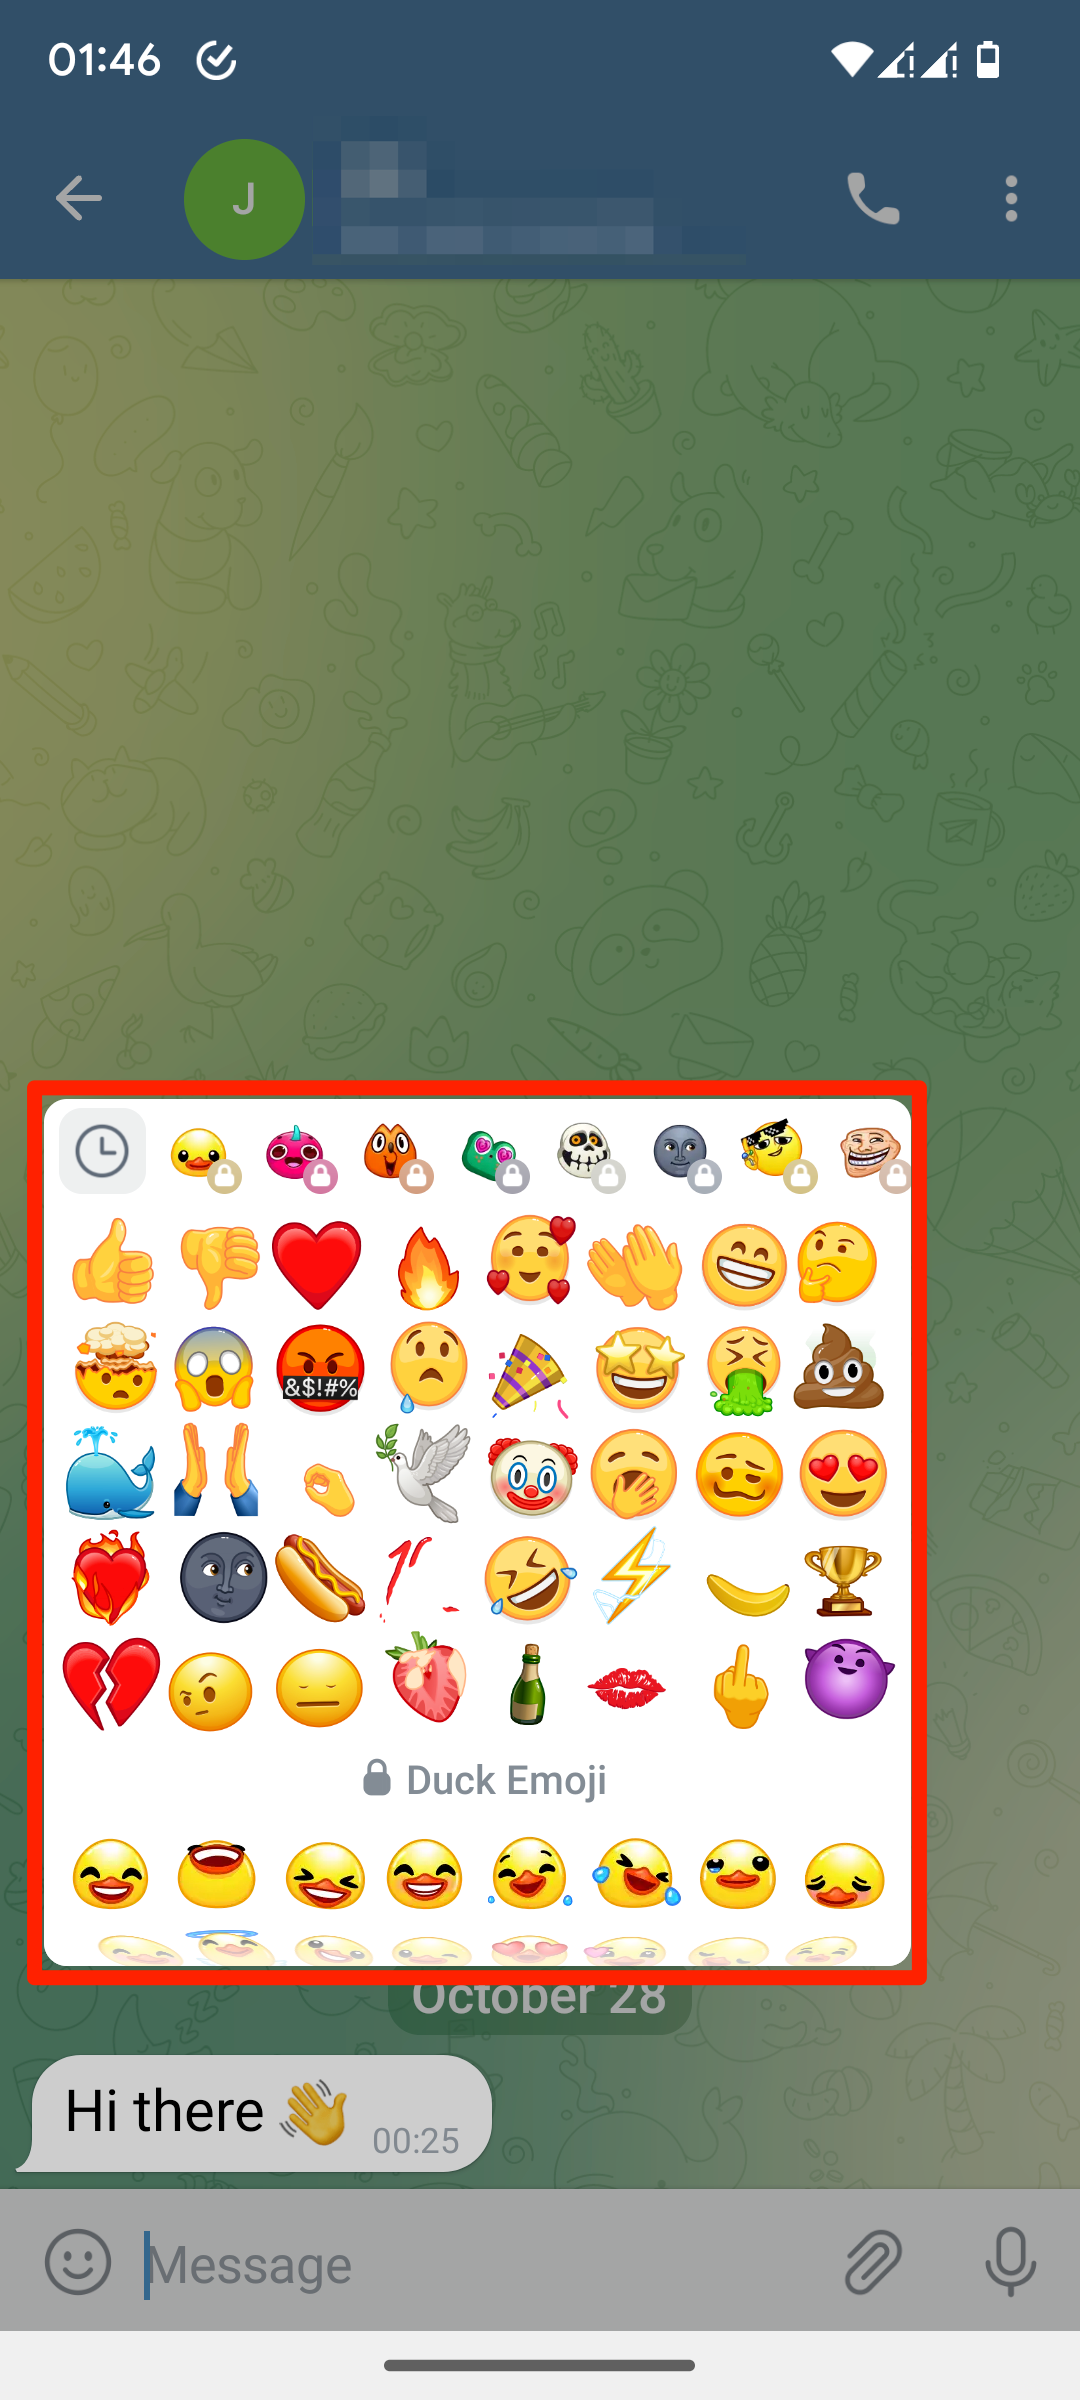 Reaksi emoji jendela obrolan Telegram lebih banyak opsi